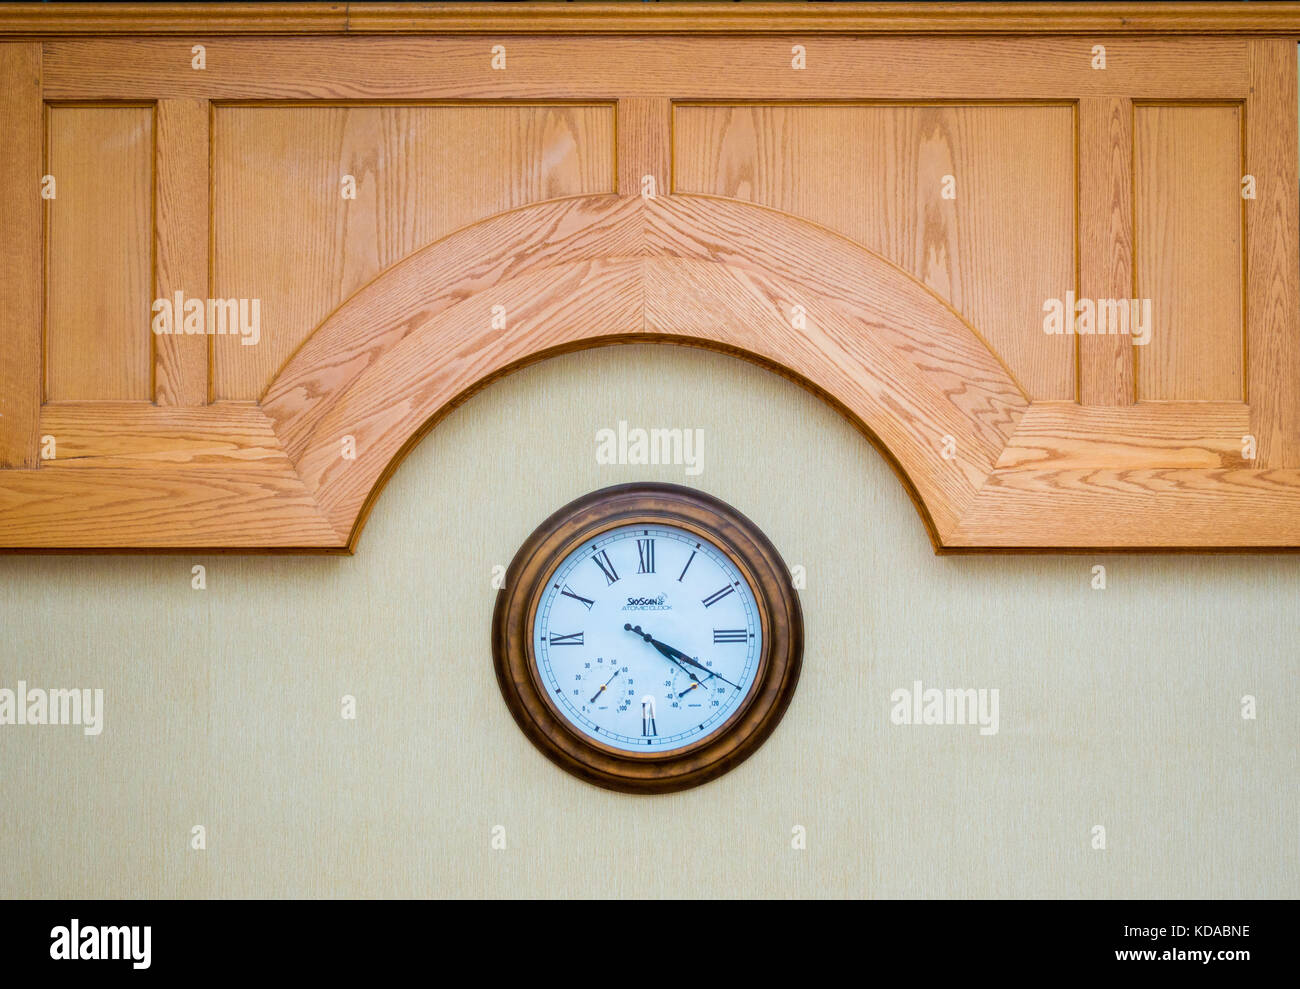 Classic orologio da parete con numeri romani sotto un scolpito sul pannello di legno Foto Stock